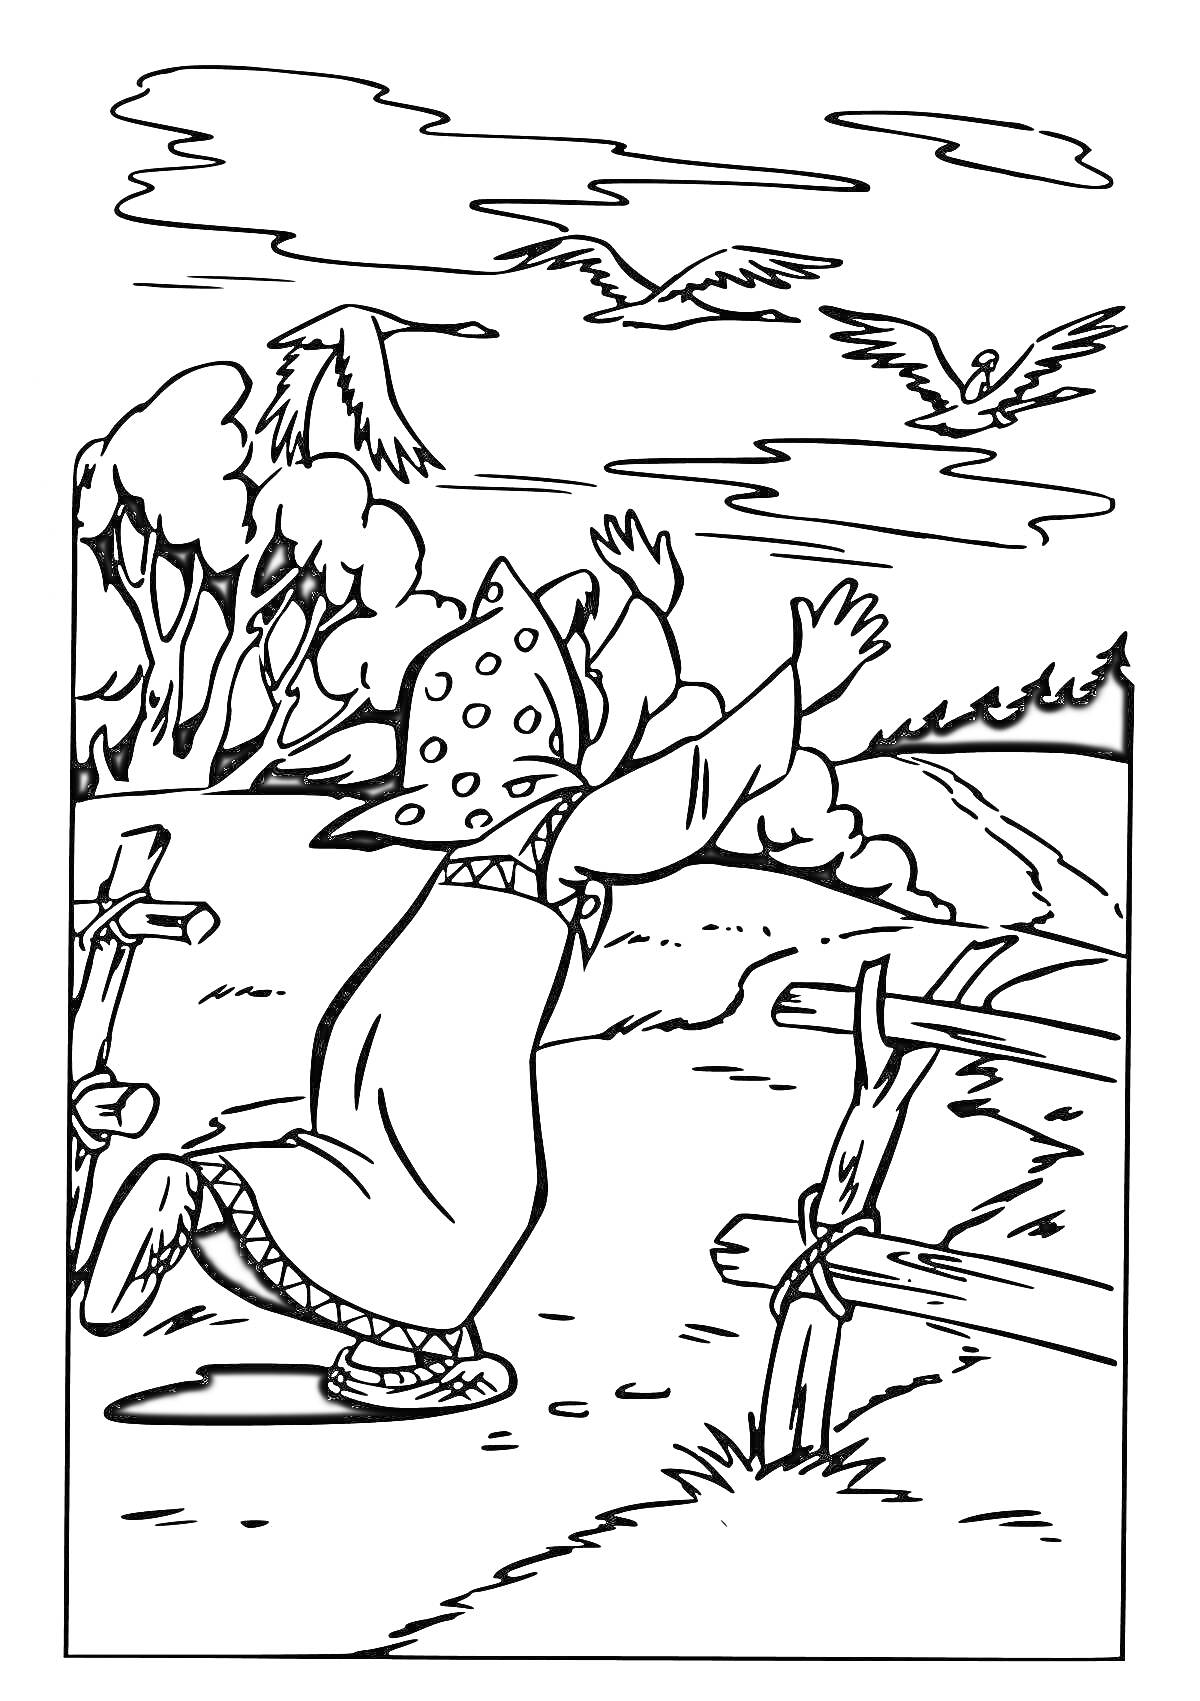 Бабушка в платке машет руками на фоне деревьев, уходящей дороги и летящих гусей-лебедей